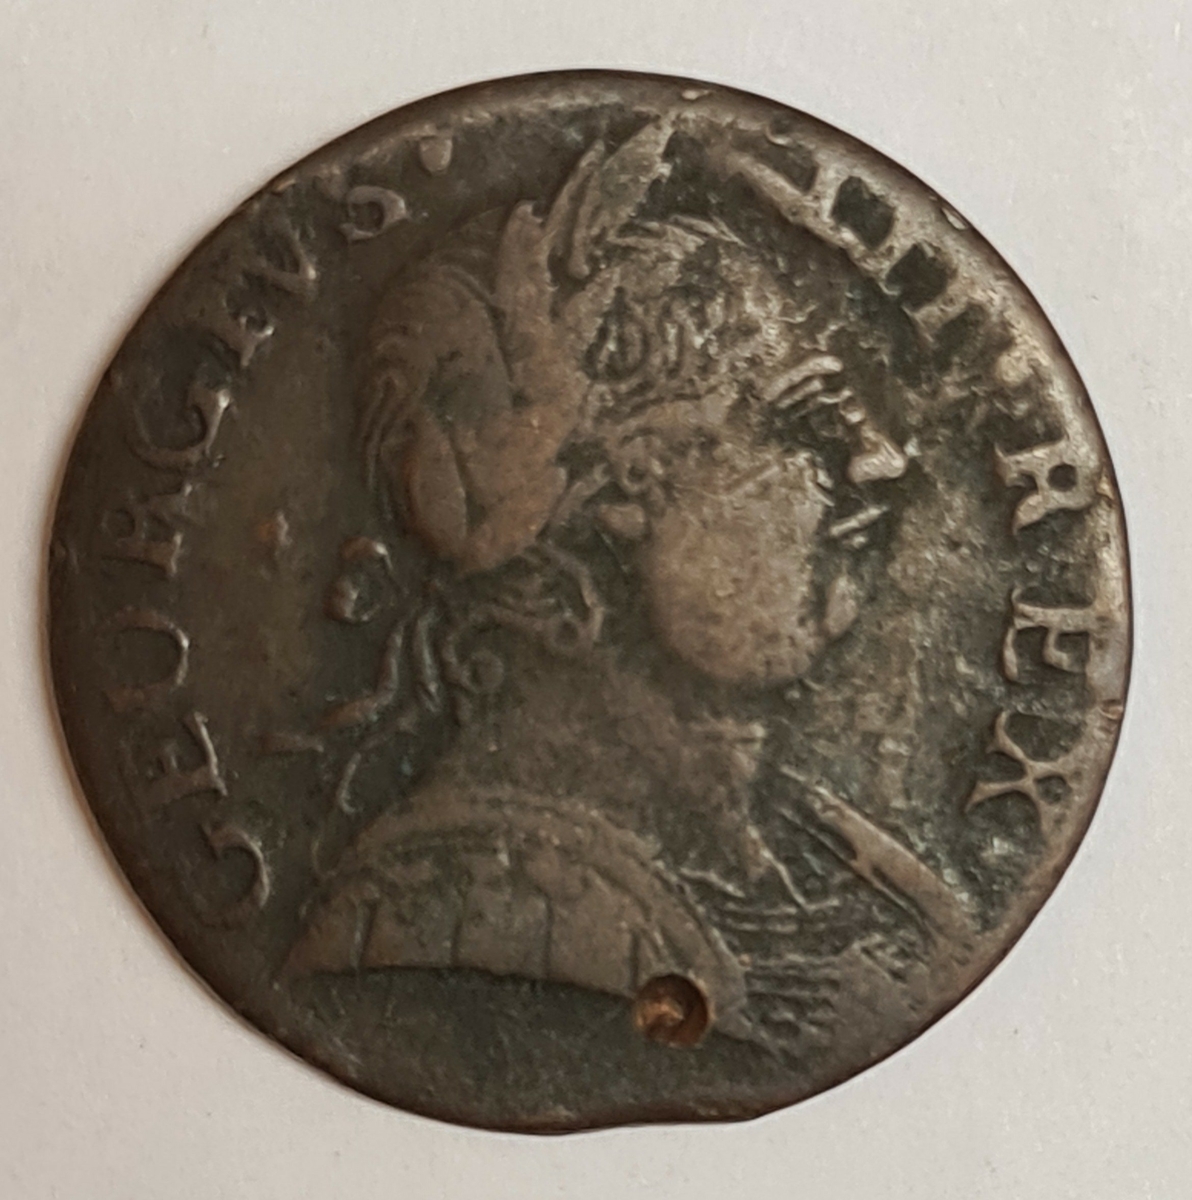 Två mynt från Storbritanien.
Penny, 1776
Penny, 1773